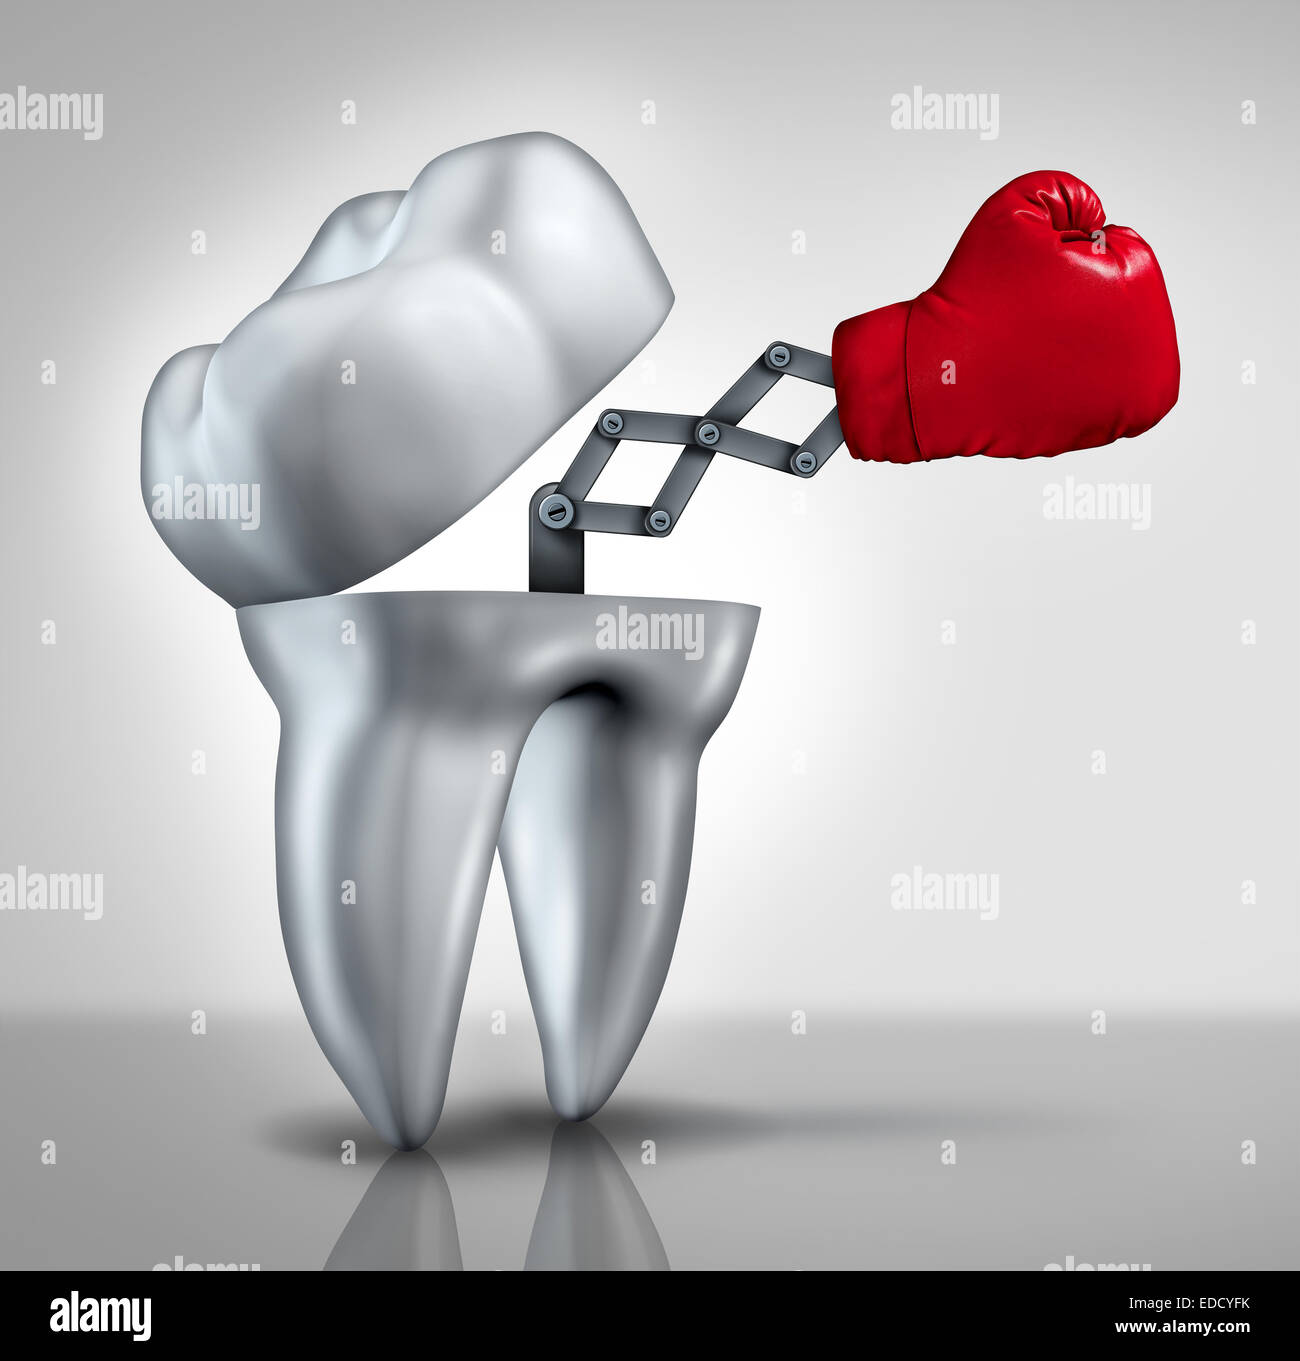 La lutte contre les caries dentaires et les soins de santé comme un concept d'une molaire avec un gant de boxe rouge pour lutter contre les caries dentaires comme un symbole de l'hygiène dentaire et dentiste services. Banque D'Images